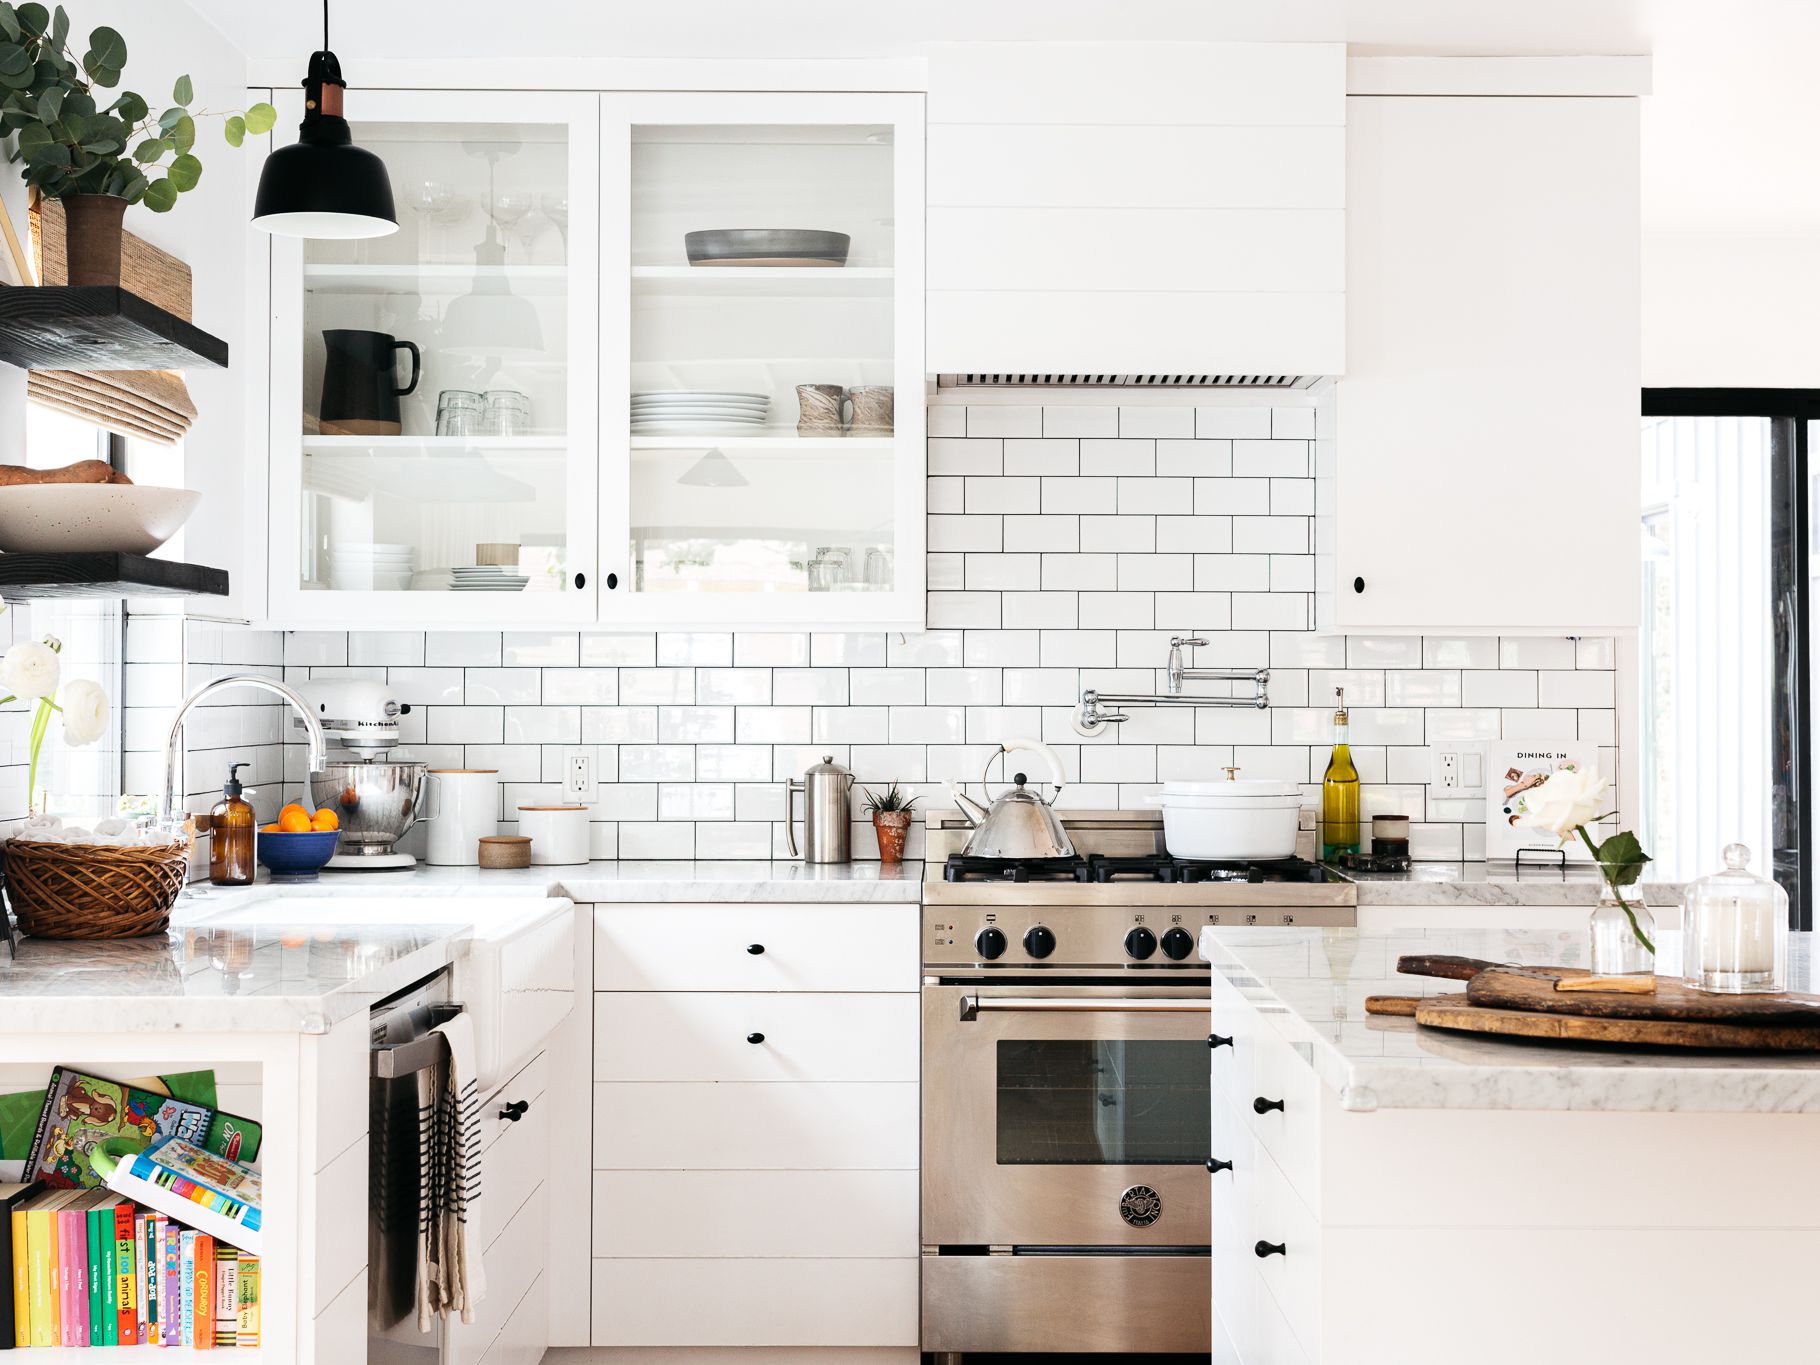 Nội thất trong phòng bếp phải đảm bảo tiện nghi, mang đến cảm giác thoải mái cho người sử dụng.